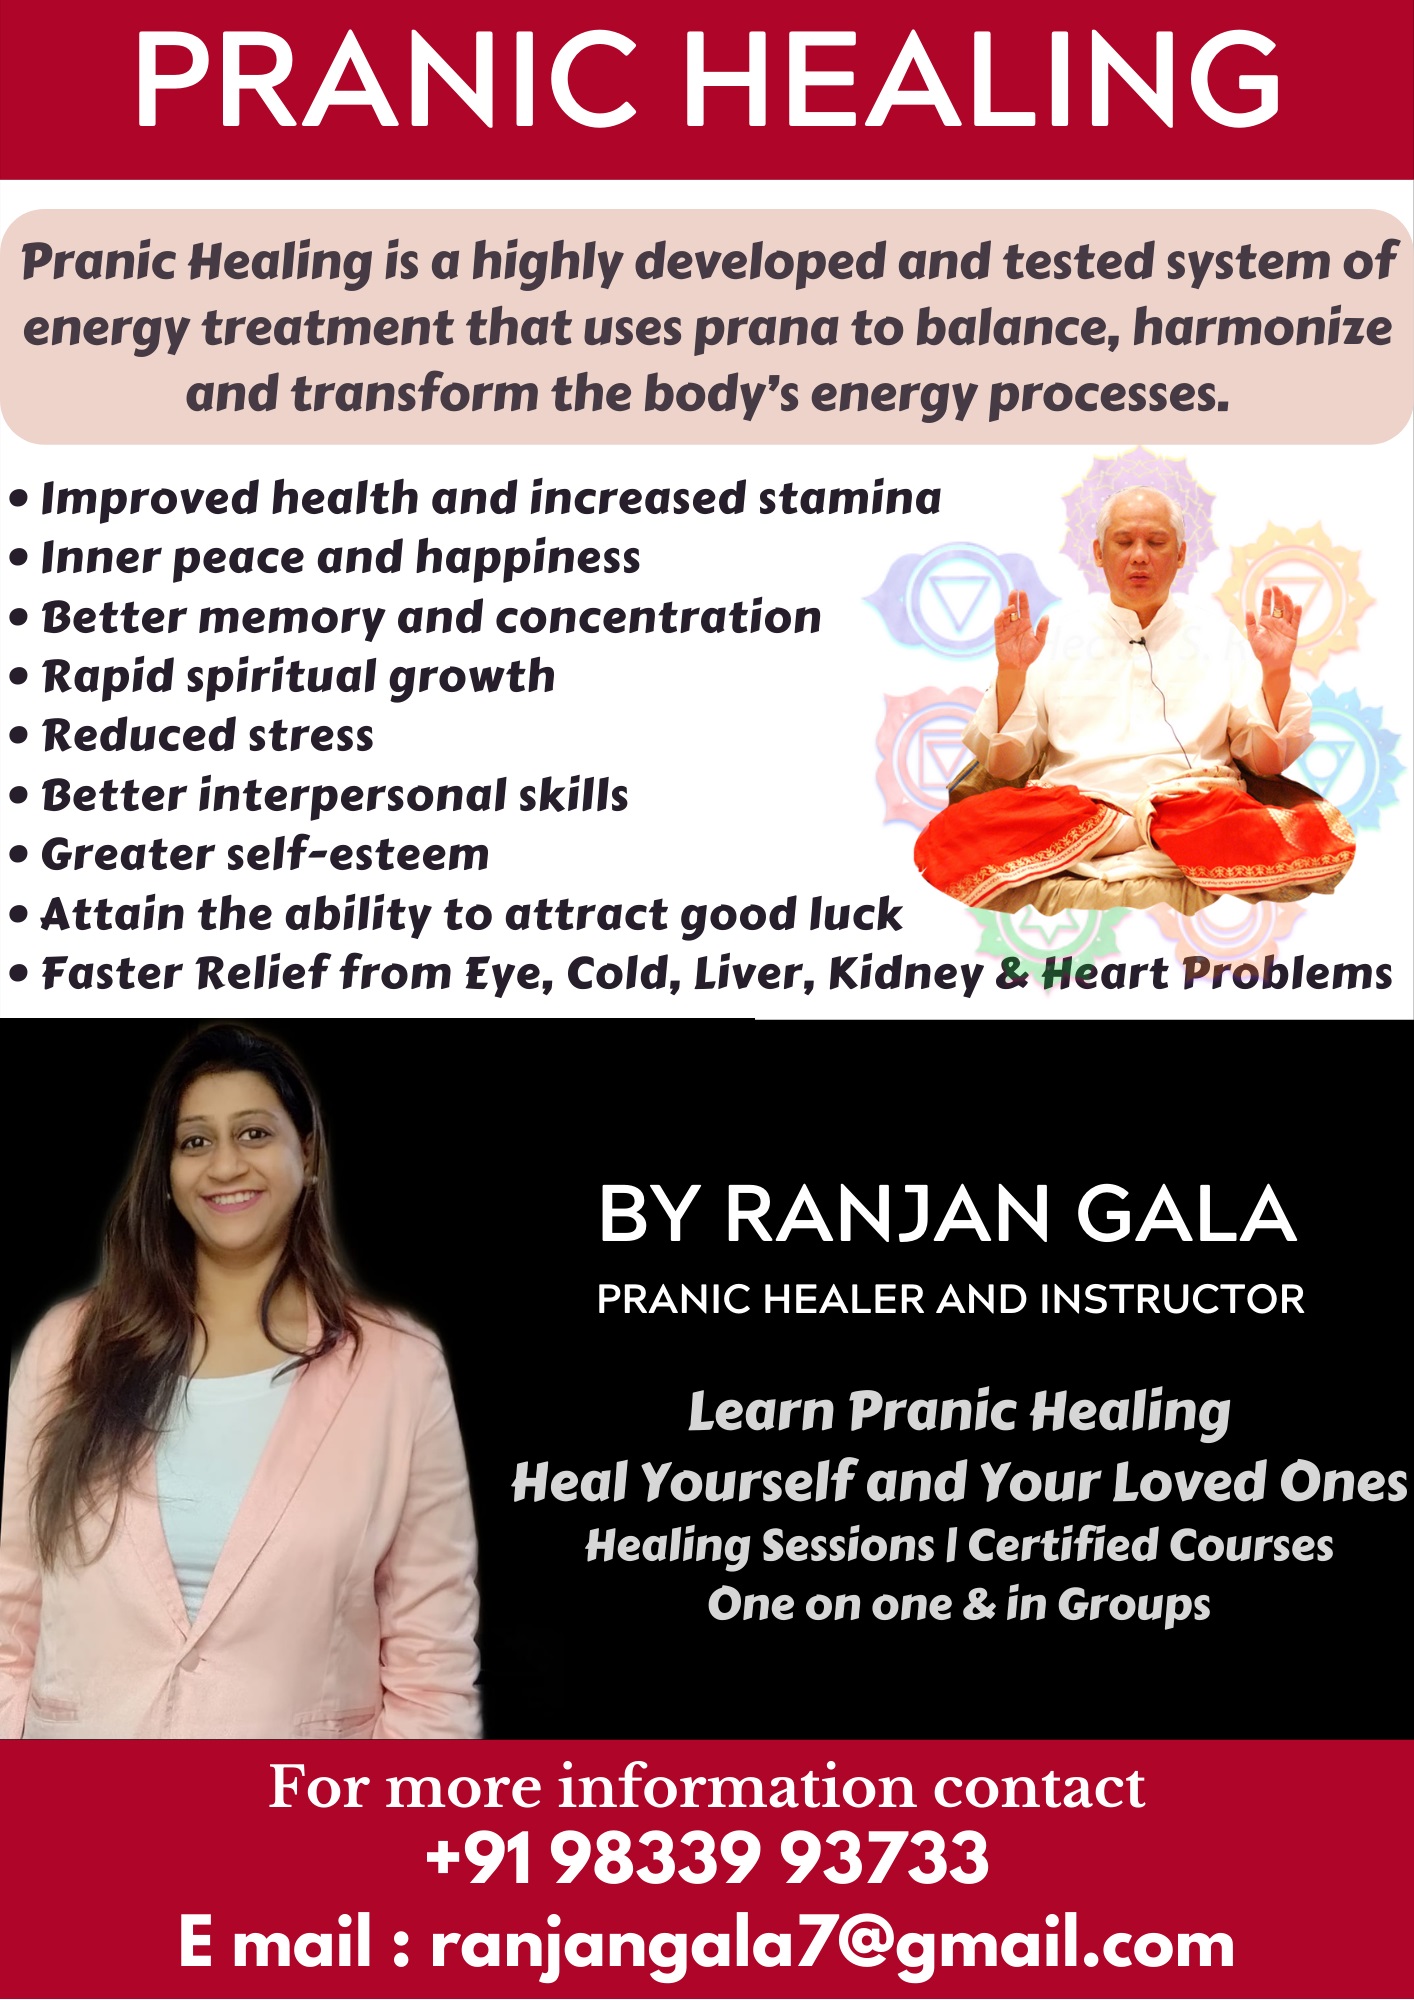 BLUE PEARL Pranic Healing Center - Ranjan Gala - Goa